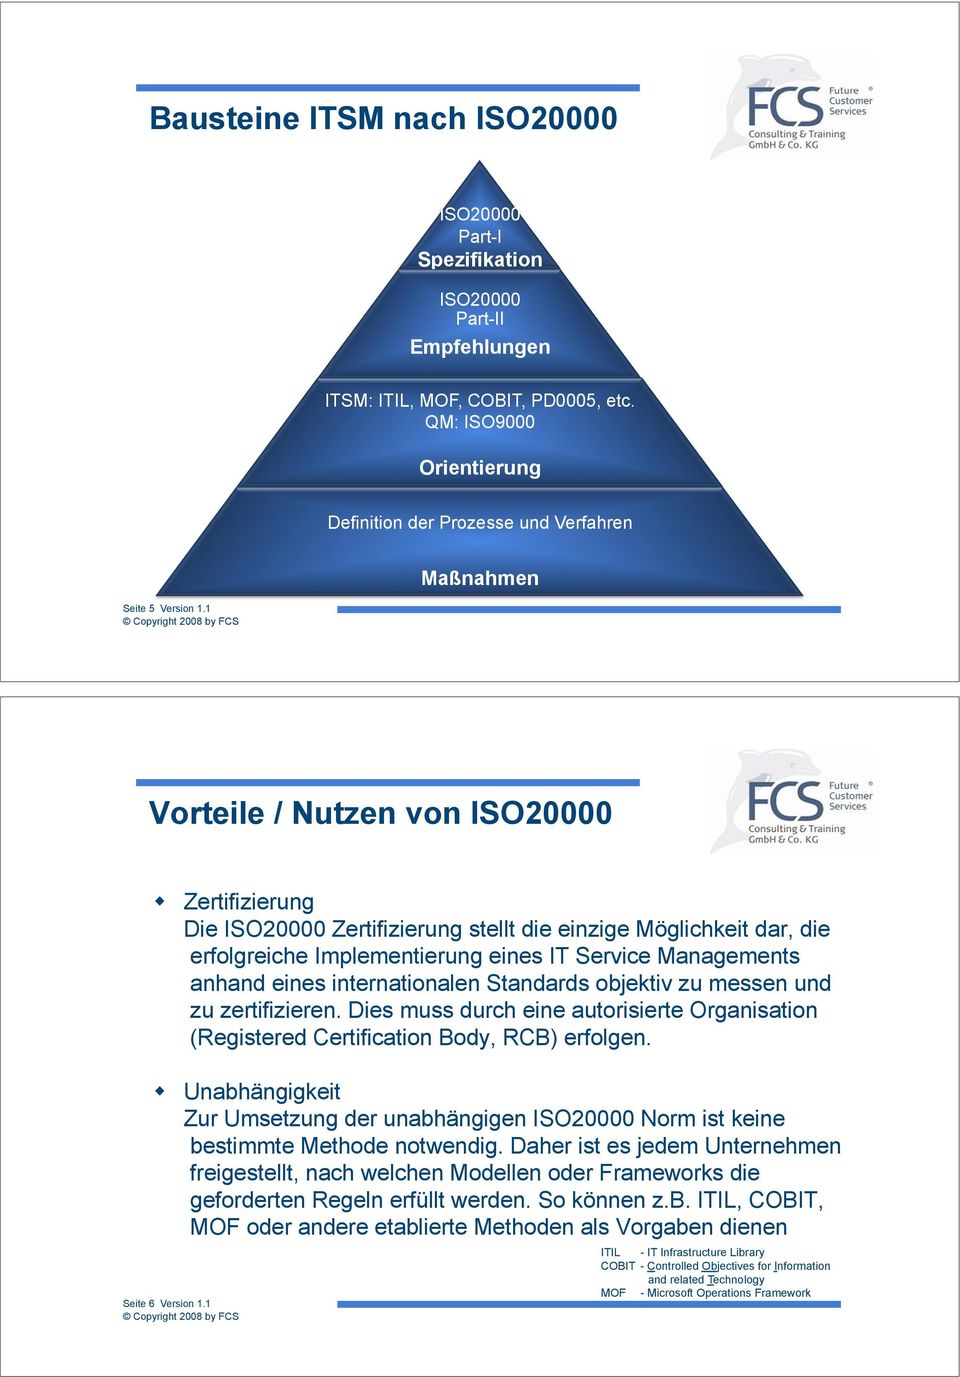 ! Zertifizierung Die ISO20000 Zertifizierung stellt die einzige Möglichkeit dar, die erfolgreiche Implementierung eines IT Service Managements anhand eines internationalen Standards objektiv zu